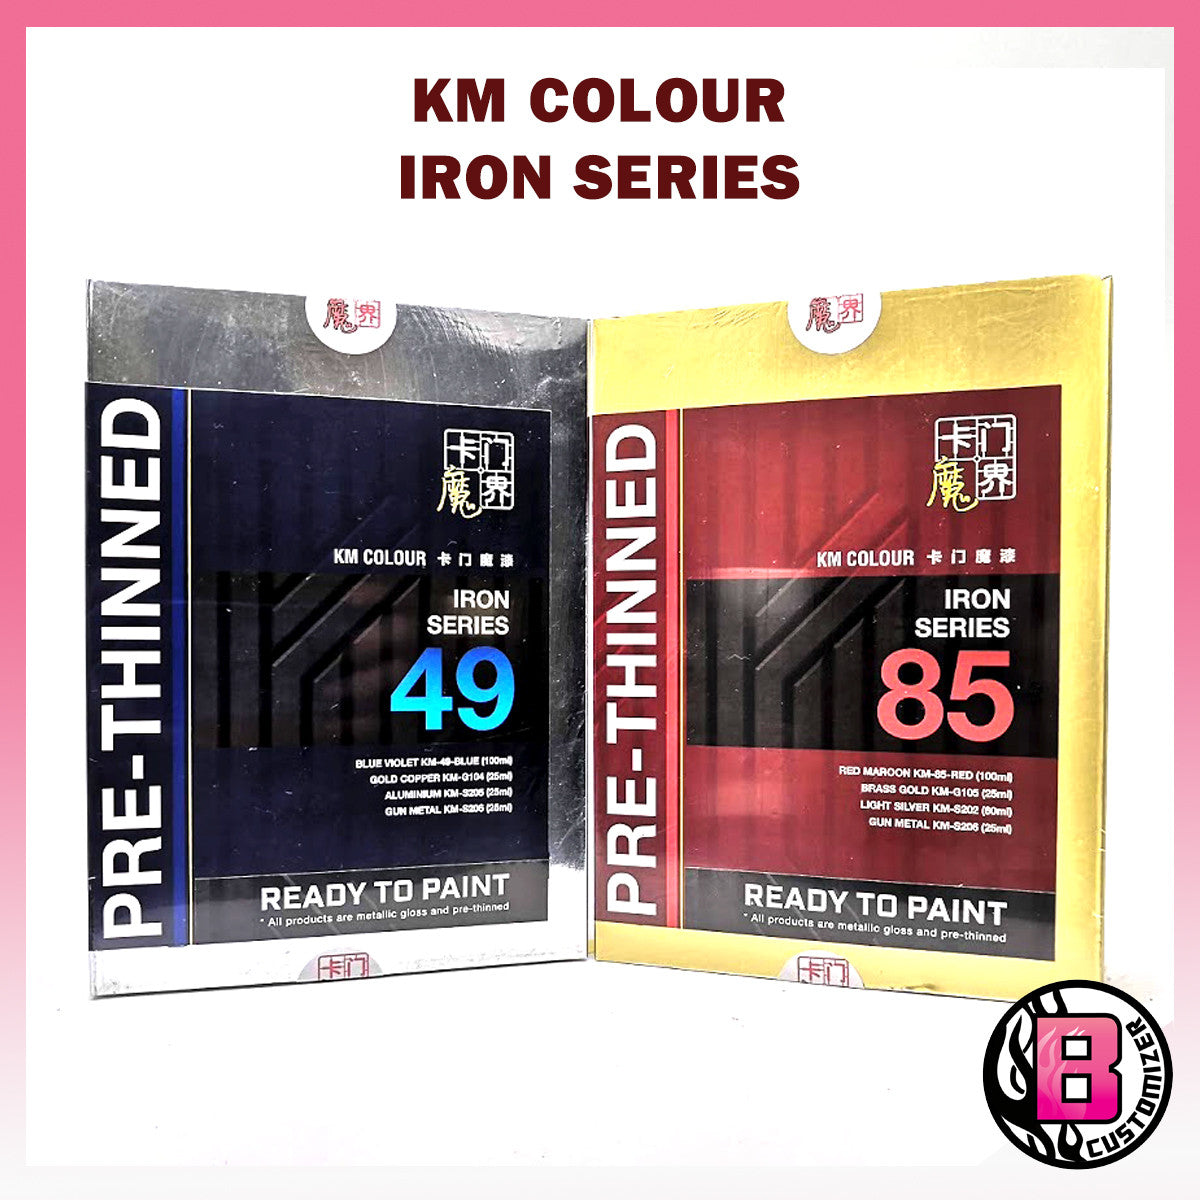 KM Colour Iron Man Color series (Iron Series-49 & Iron Series-85)